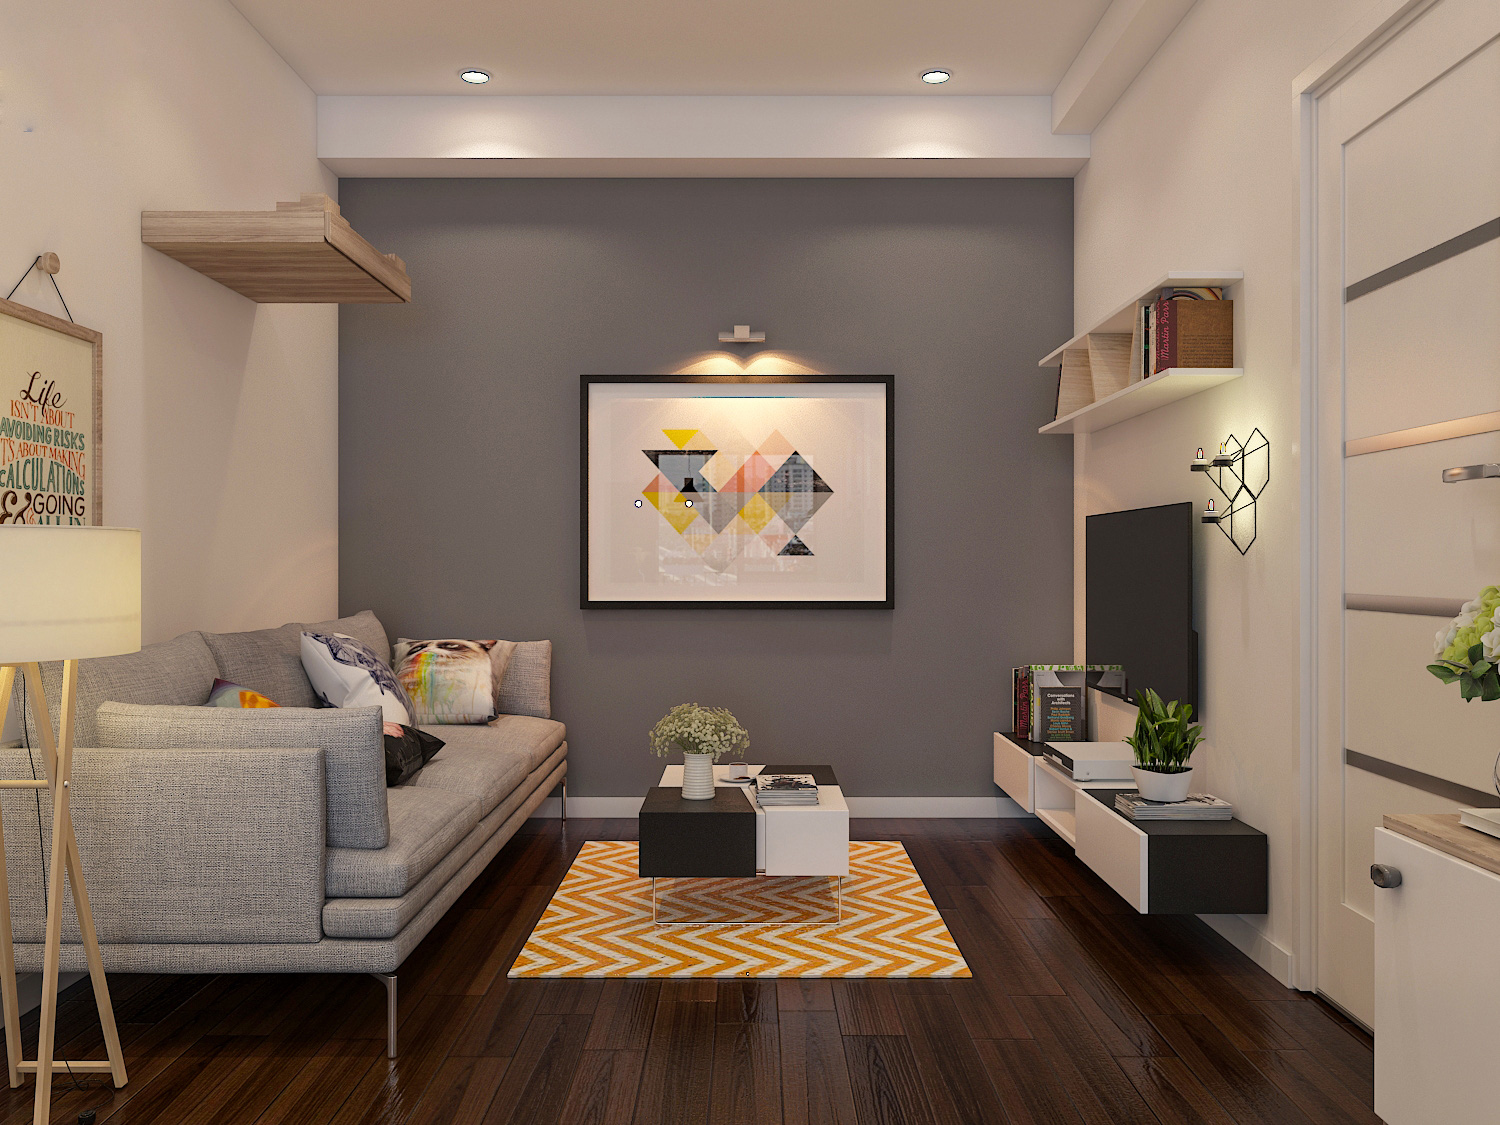 Hình ảnh phòng khách căn hộ tập thể 52m2 với sofa ghi, bàn trà nhỏ xinh, thảm trài màu vàng chanh